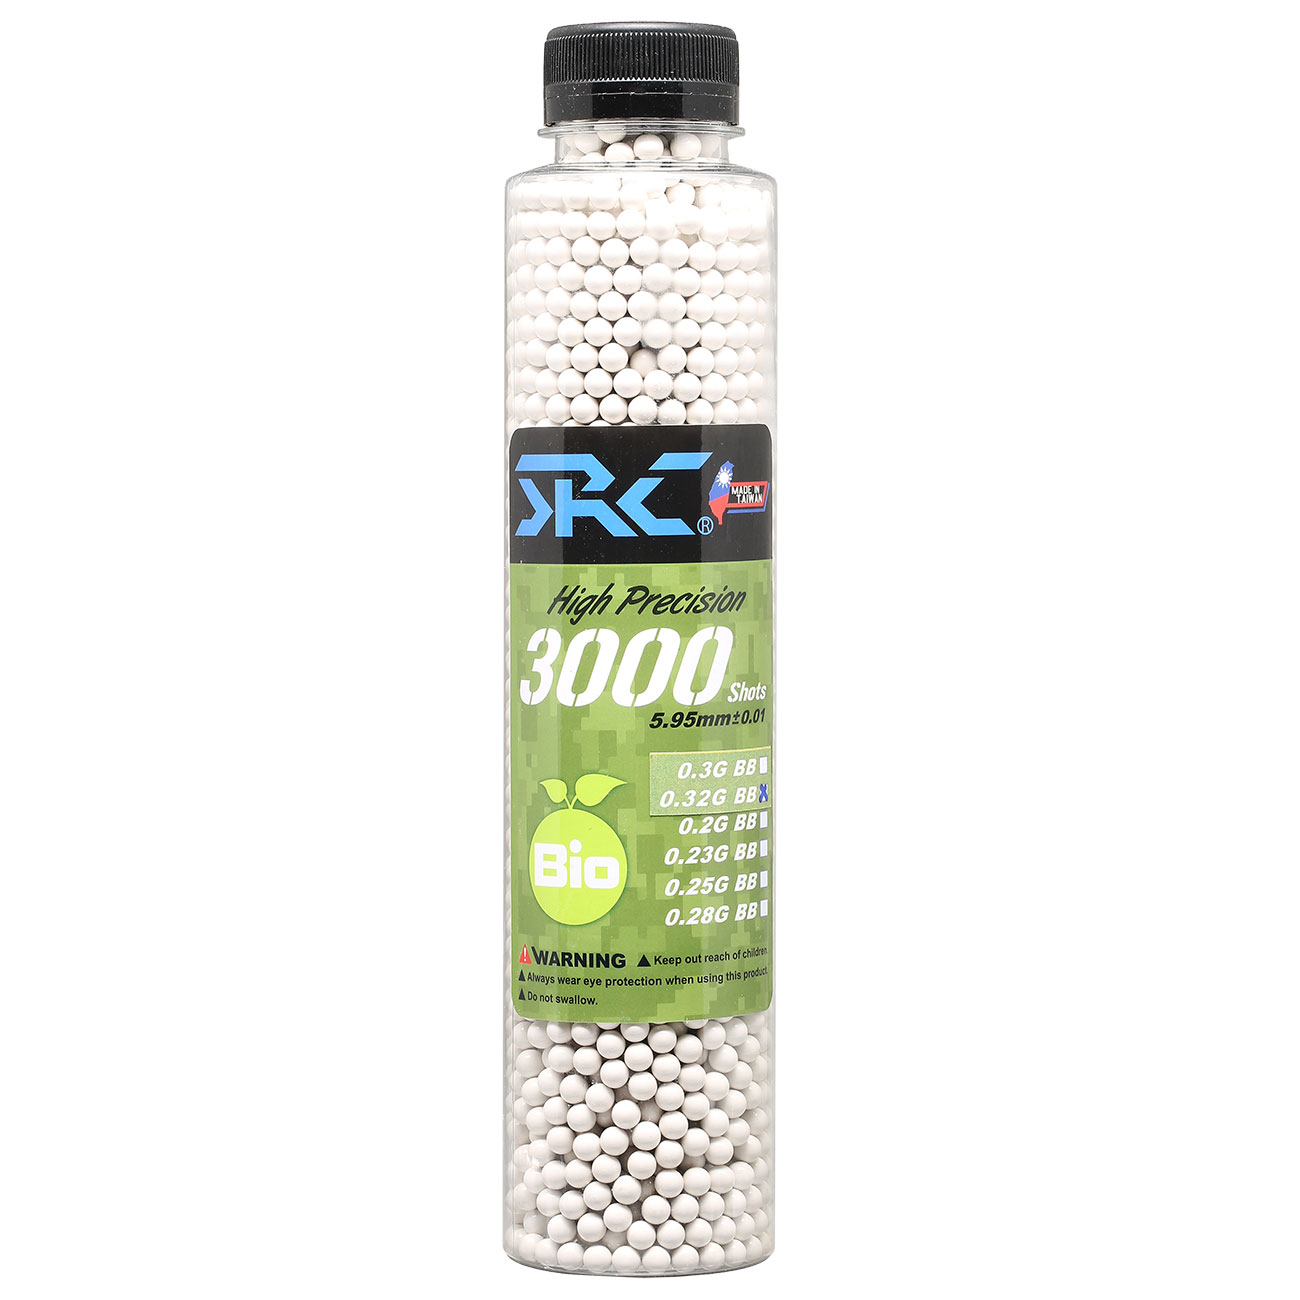 SRC High Precision Perfect Bio BBs 0,32g 3.000er Flasche weiss